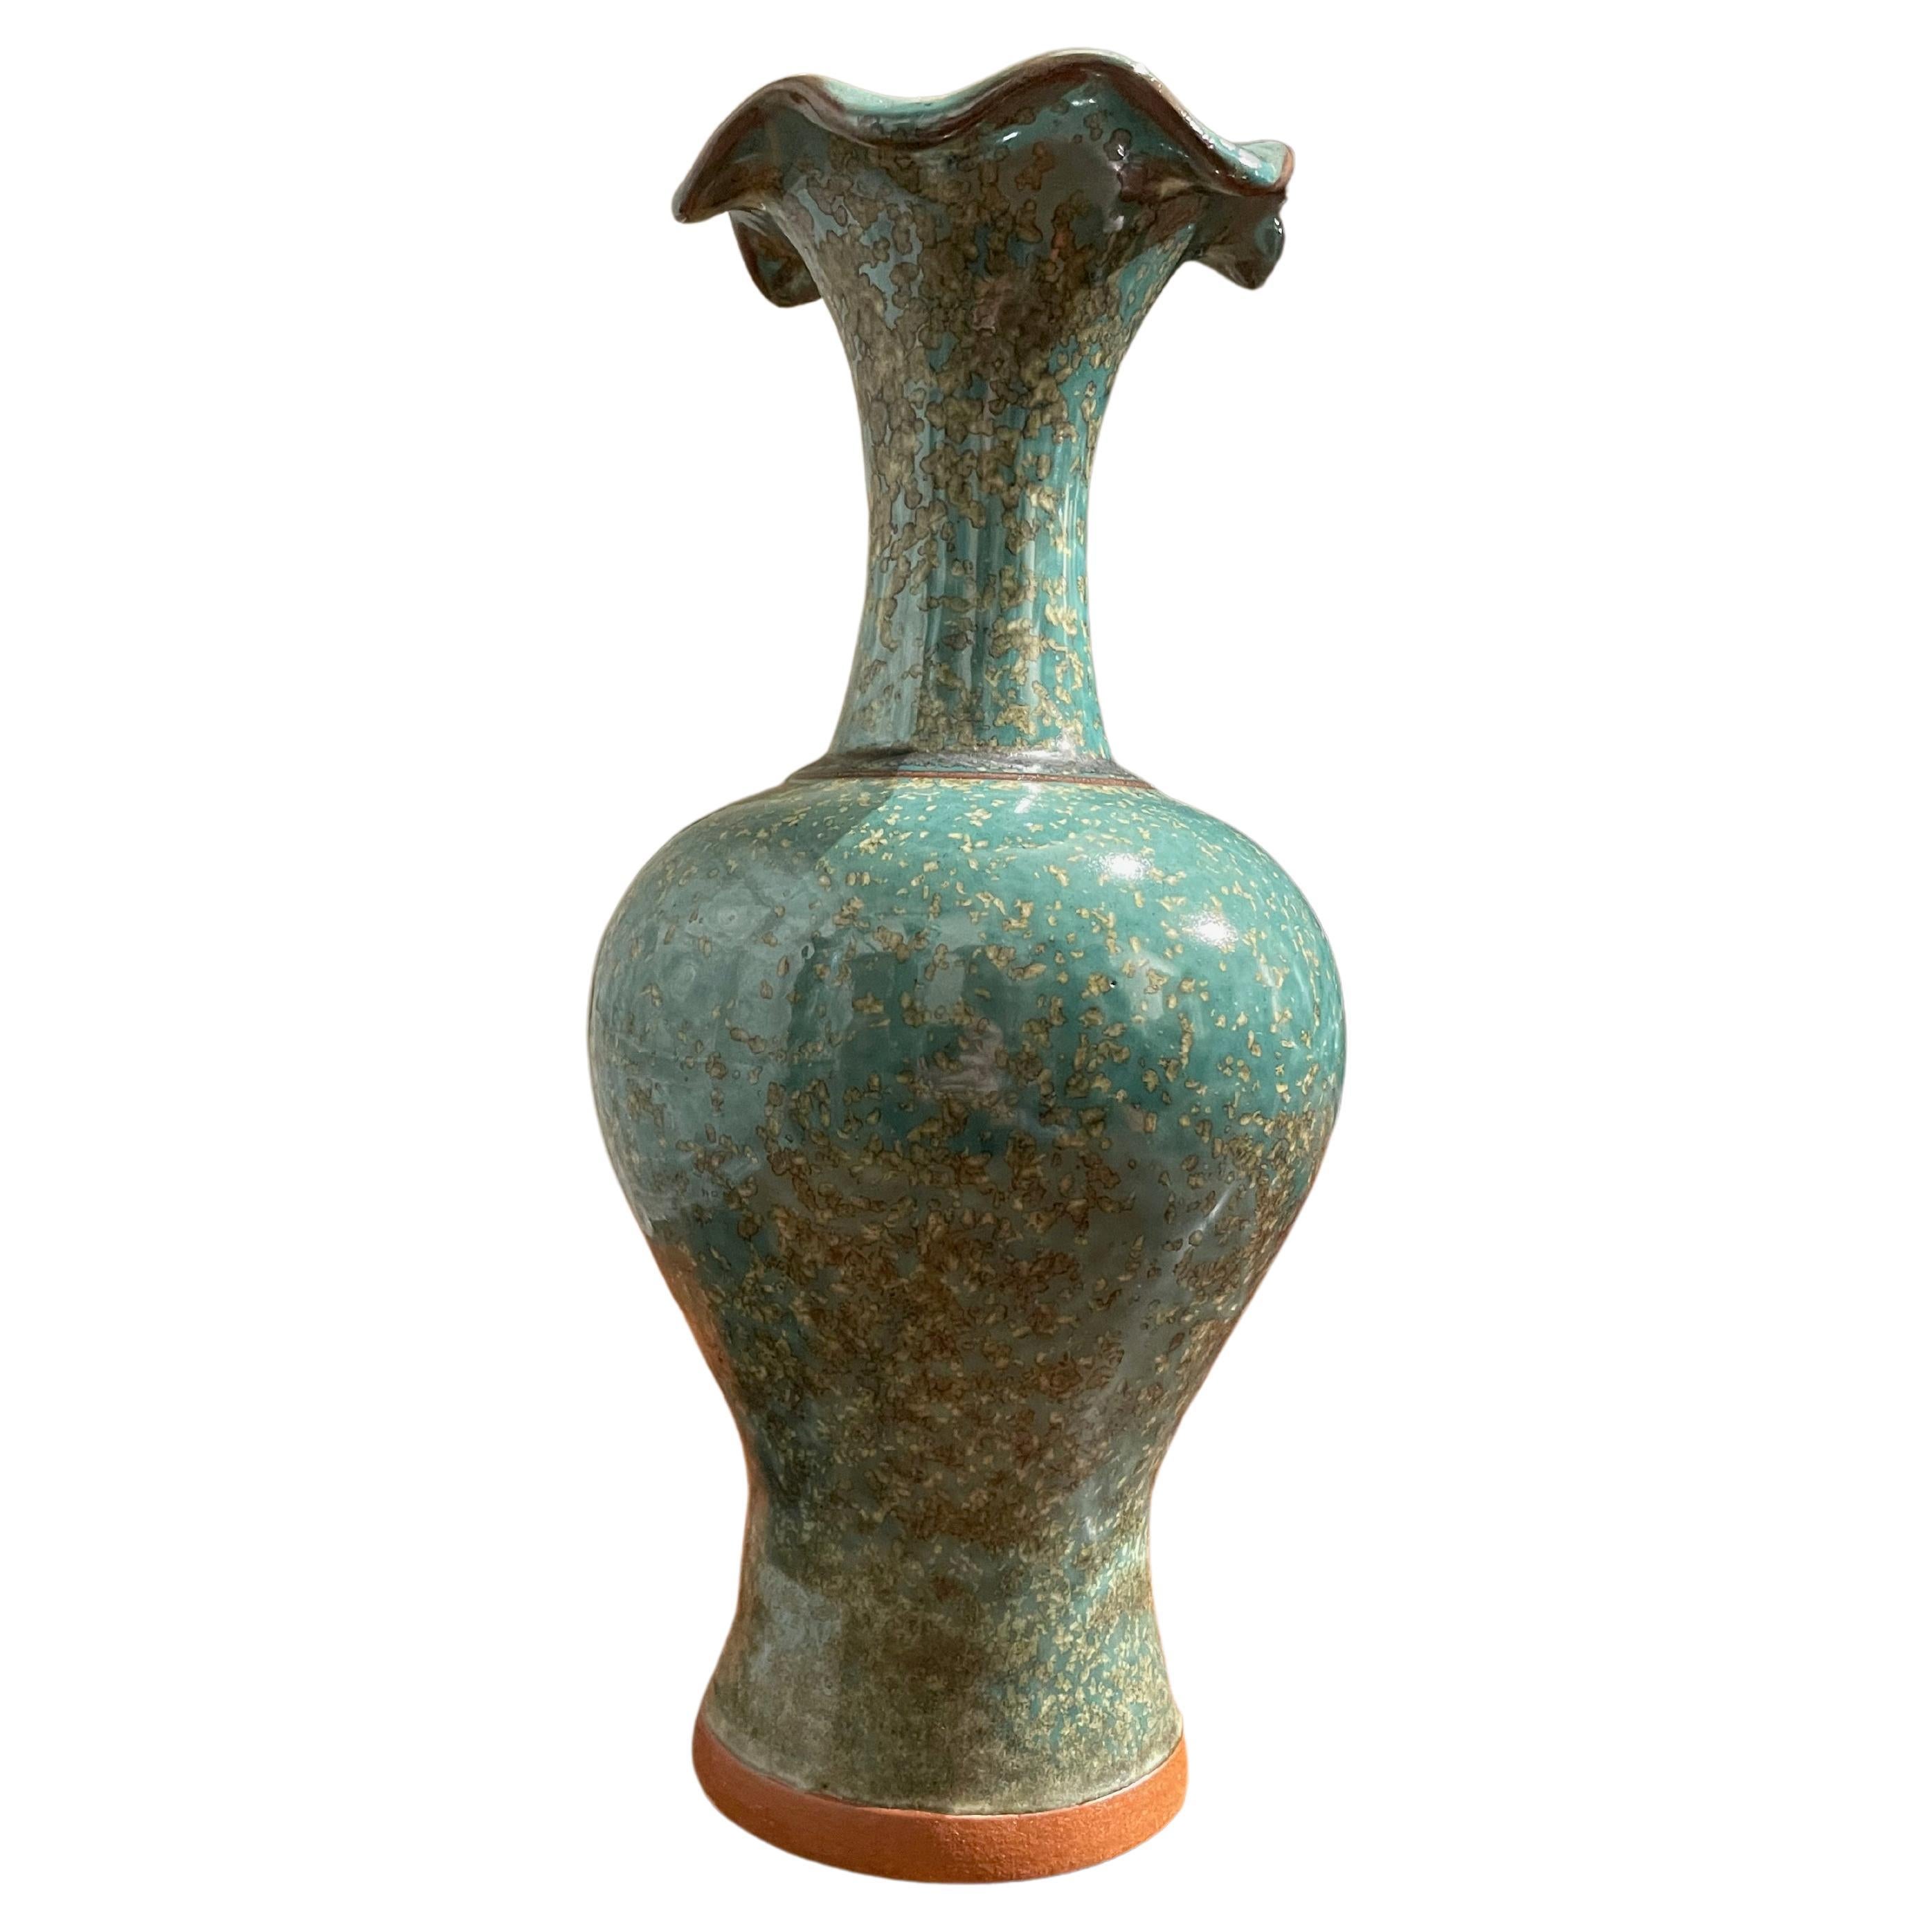 Türkis-Vase mit goldfarbener gesprenkelter Glasur und Wellenschliff, China, zeitgenössisch